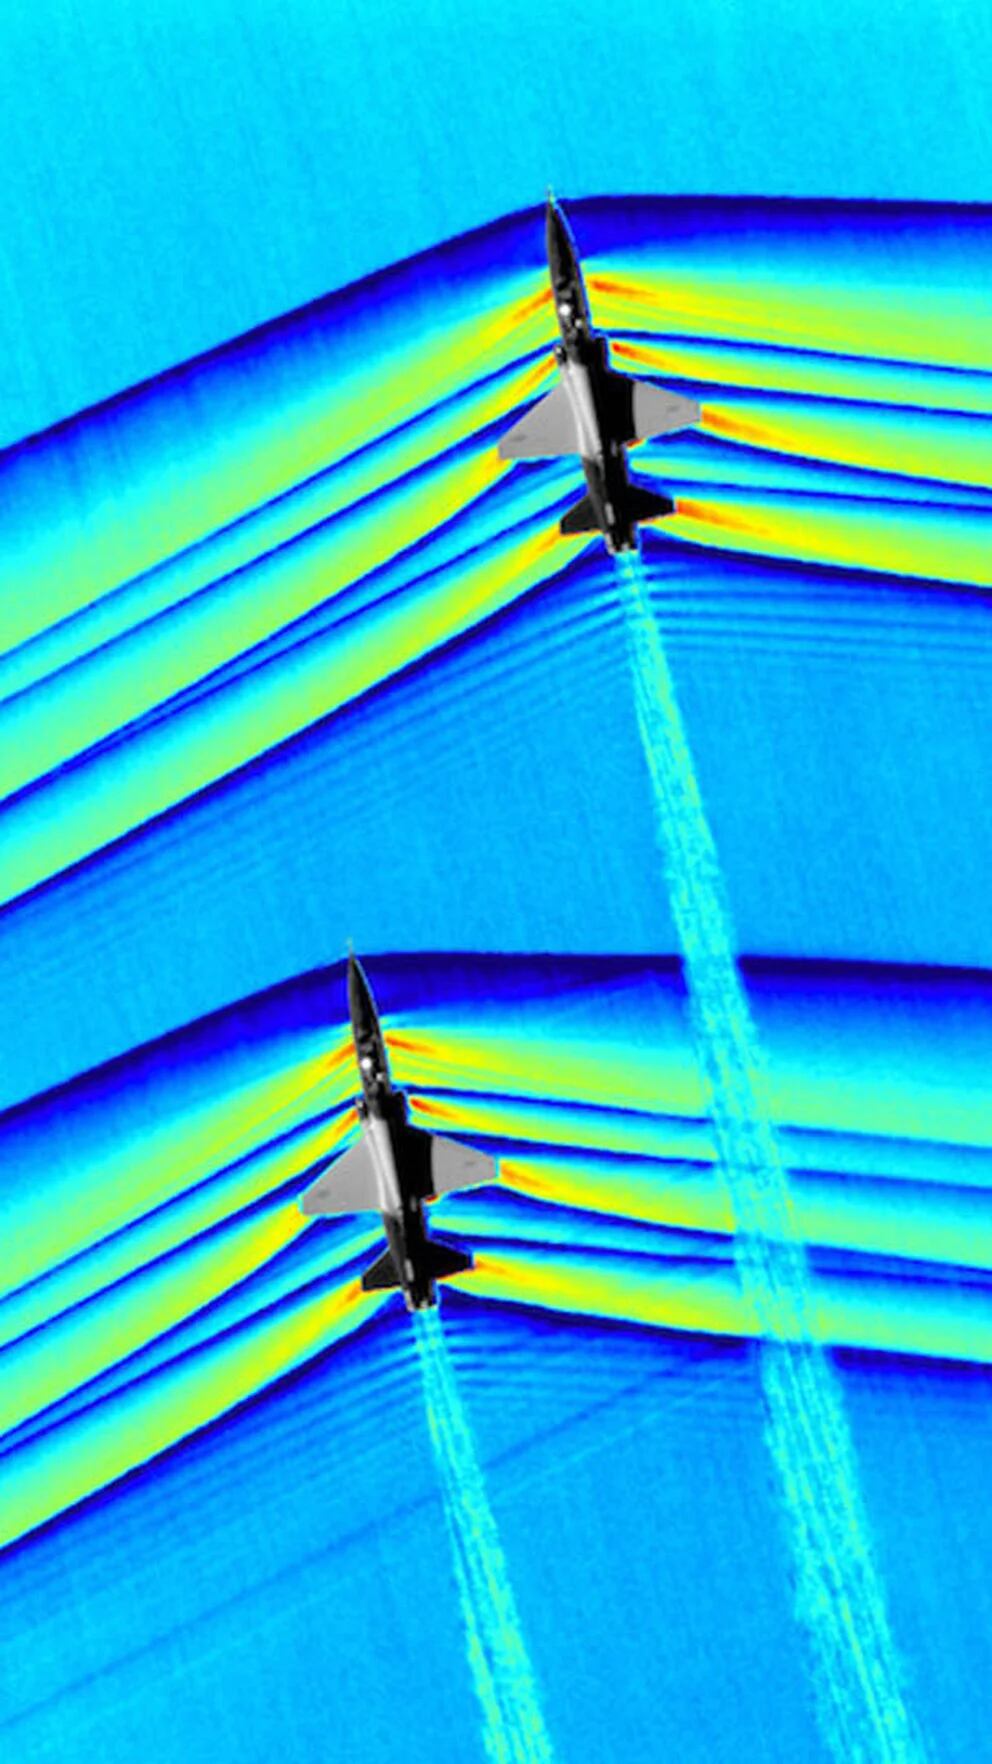 Locos X La Astrociencia on X: Avión a punto de romper la barrera del  sonido 🤯🤯 Espectacular fotografía en primer plano donde se observan las  líneas de ondas de choque producidas por